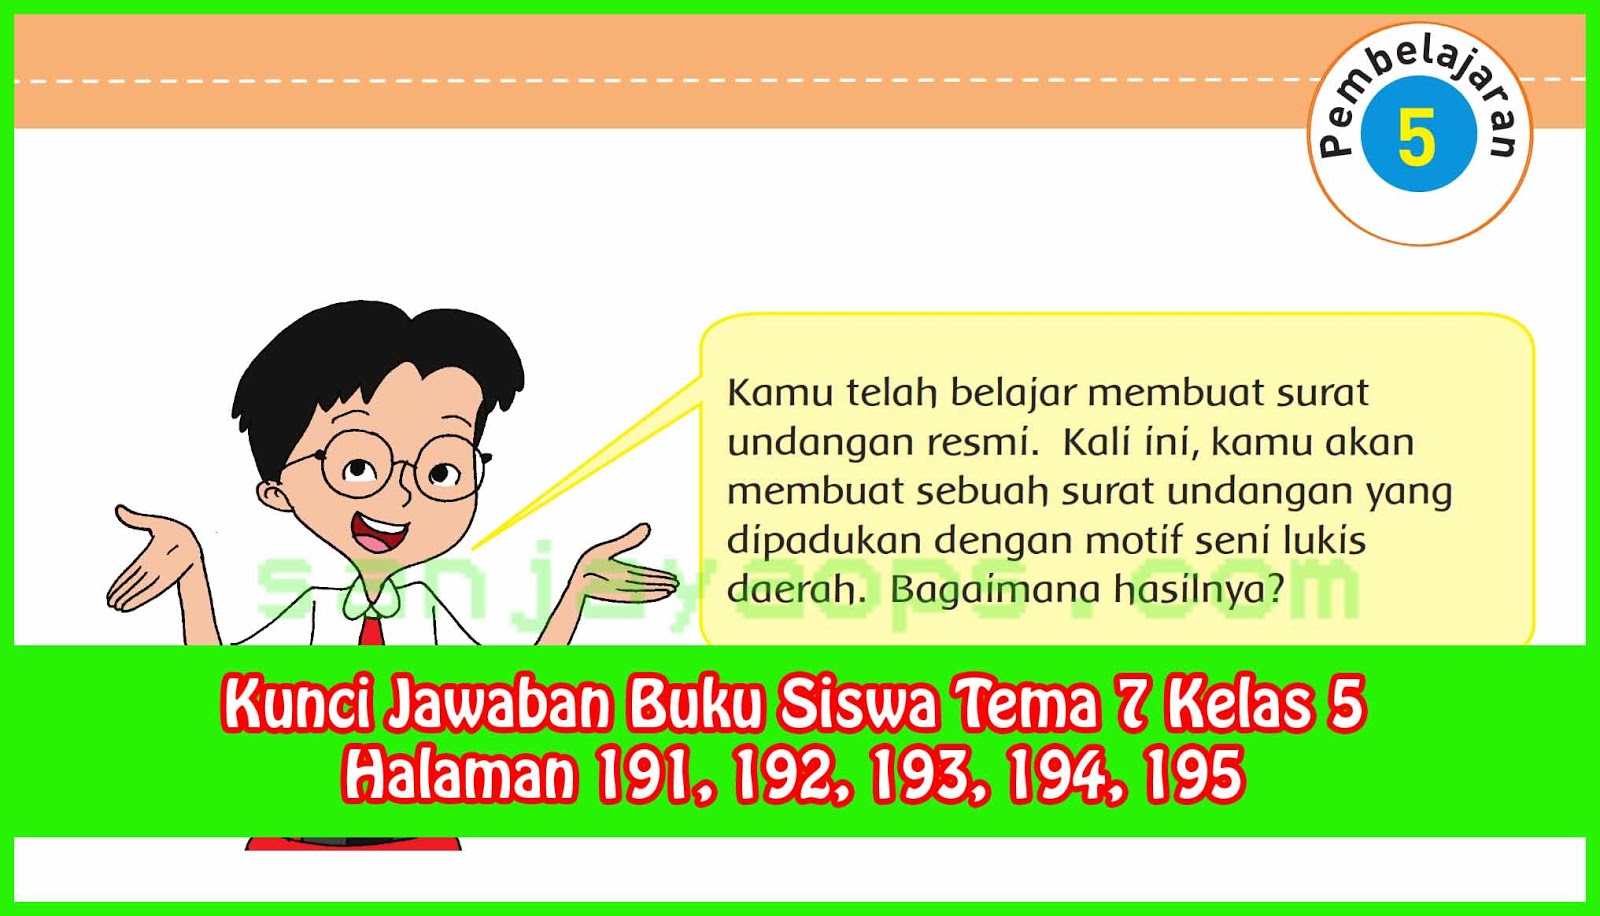 Kunci Jawaban Bahasa Indonesia Kelas 11 Revisi 2017 Halaman 95 - Unduh Kunci Jawaban Bahasa Indonesia Kelas 11 Revisi 2017 Halaman 95 Terupdate